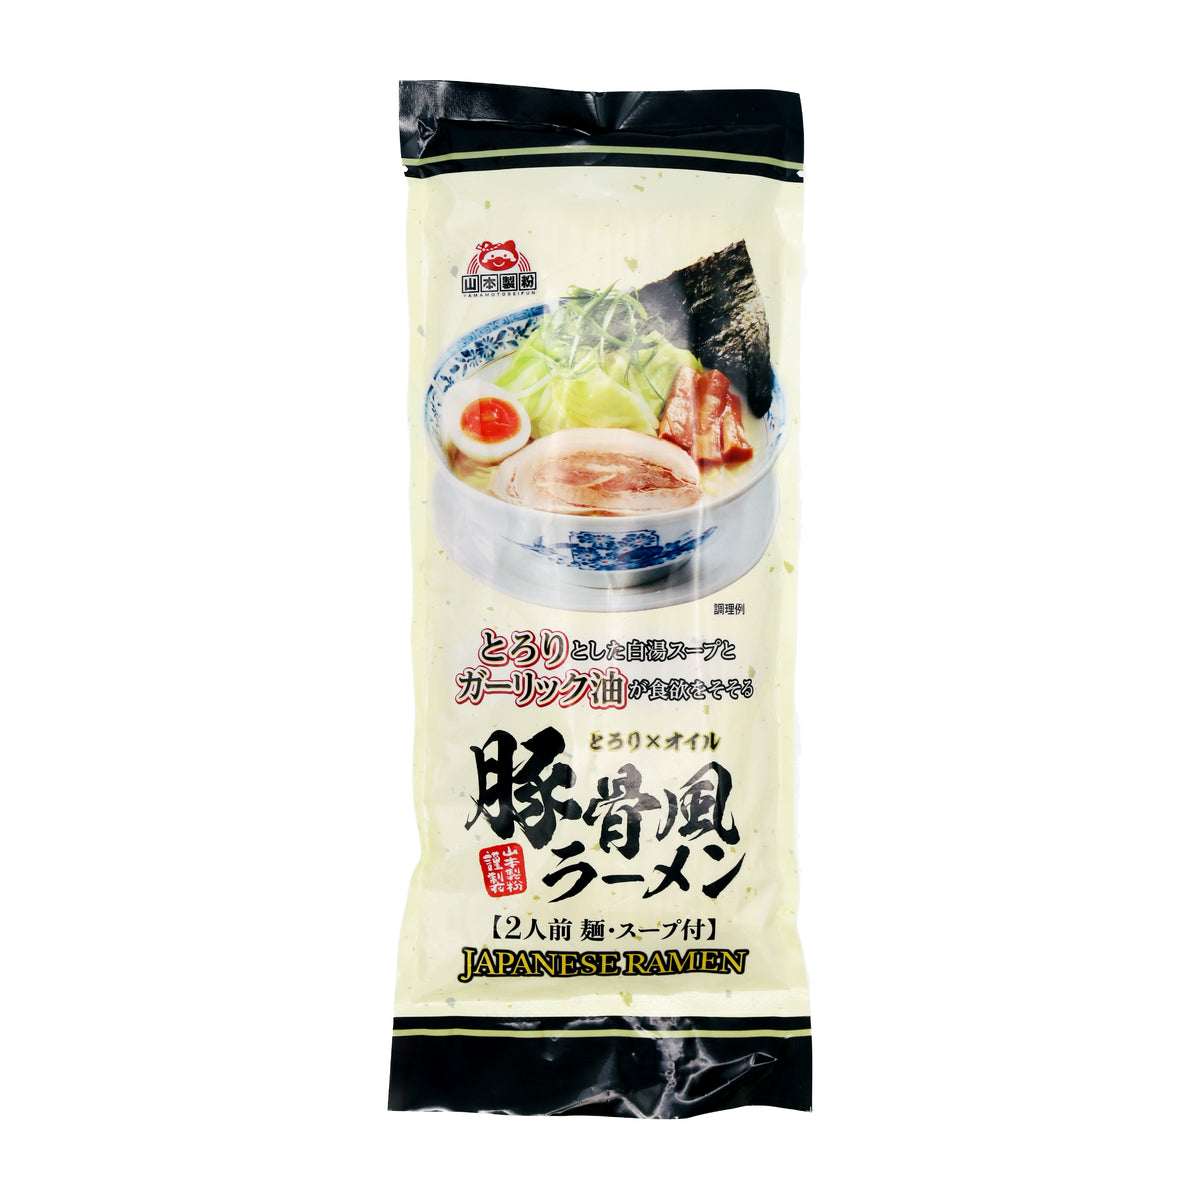 Yamamoto Seifun Japanese Ramen (tonkotu Dry Noodle) (2 Se